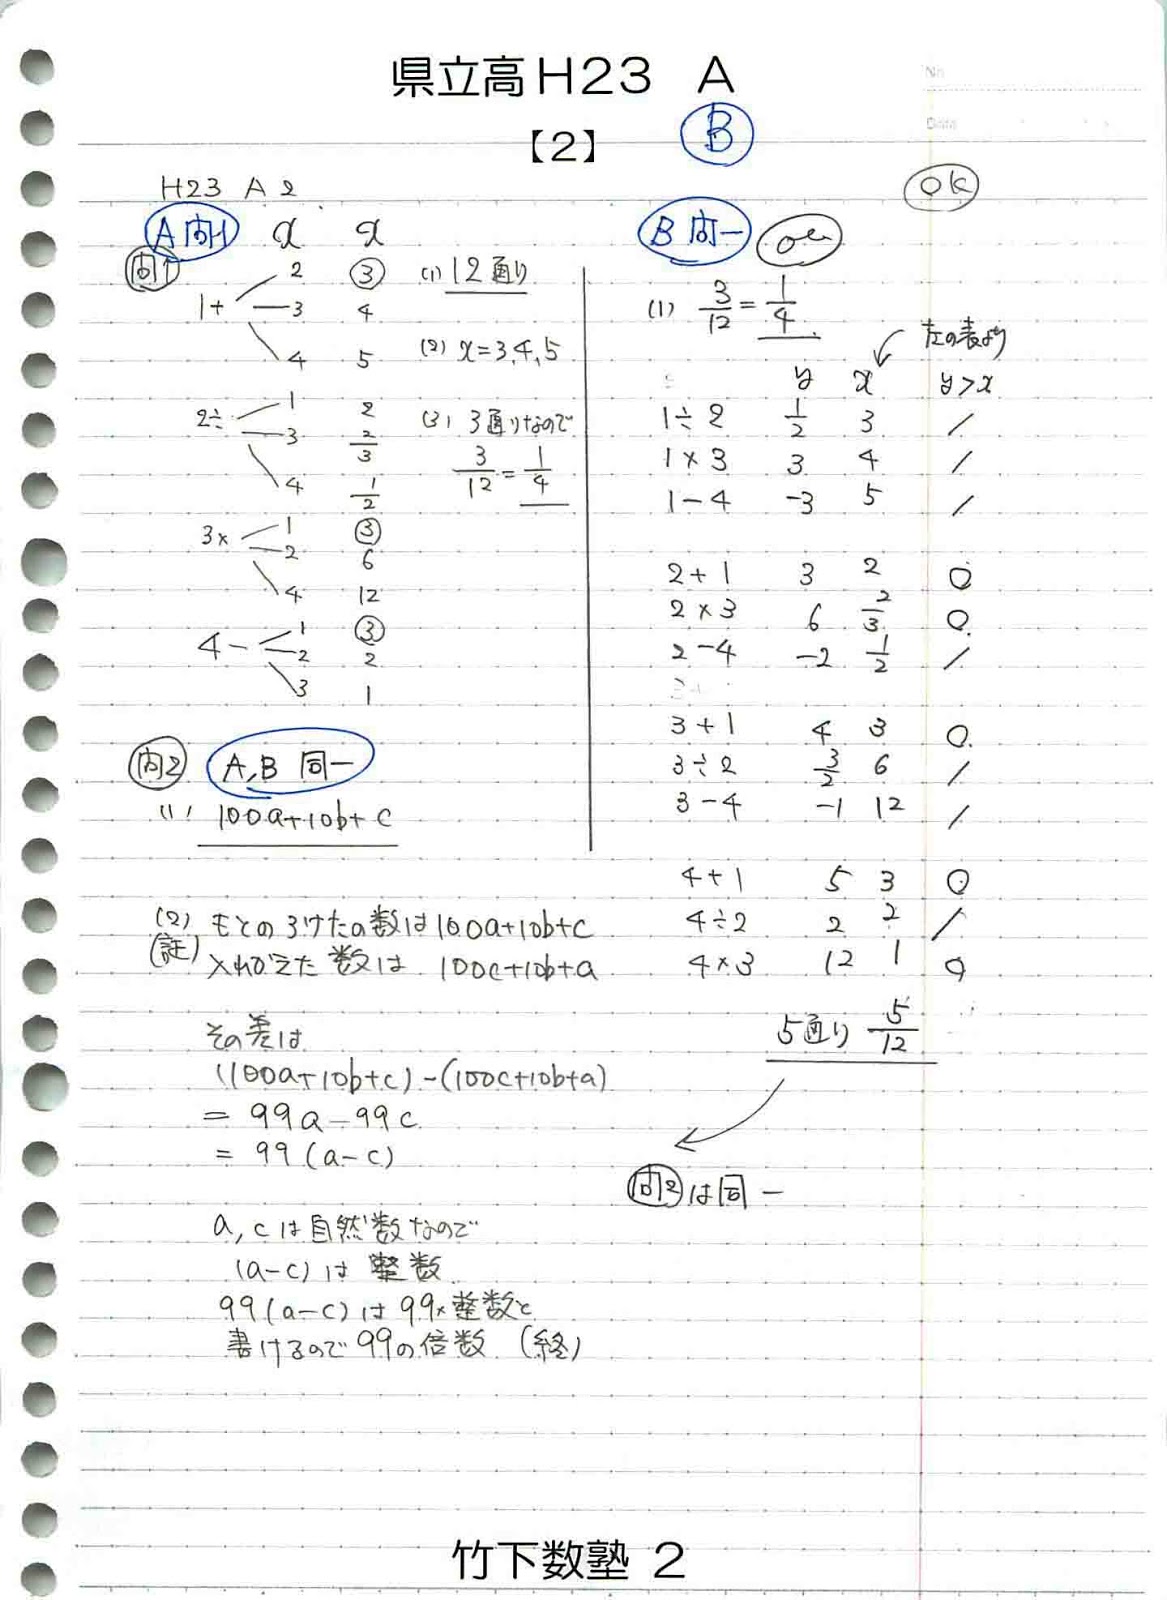 竹下数塾: 【県立高入試】2011(h23)数学AB解答